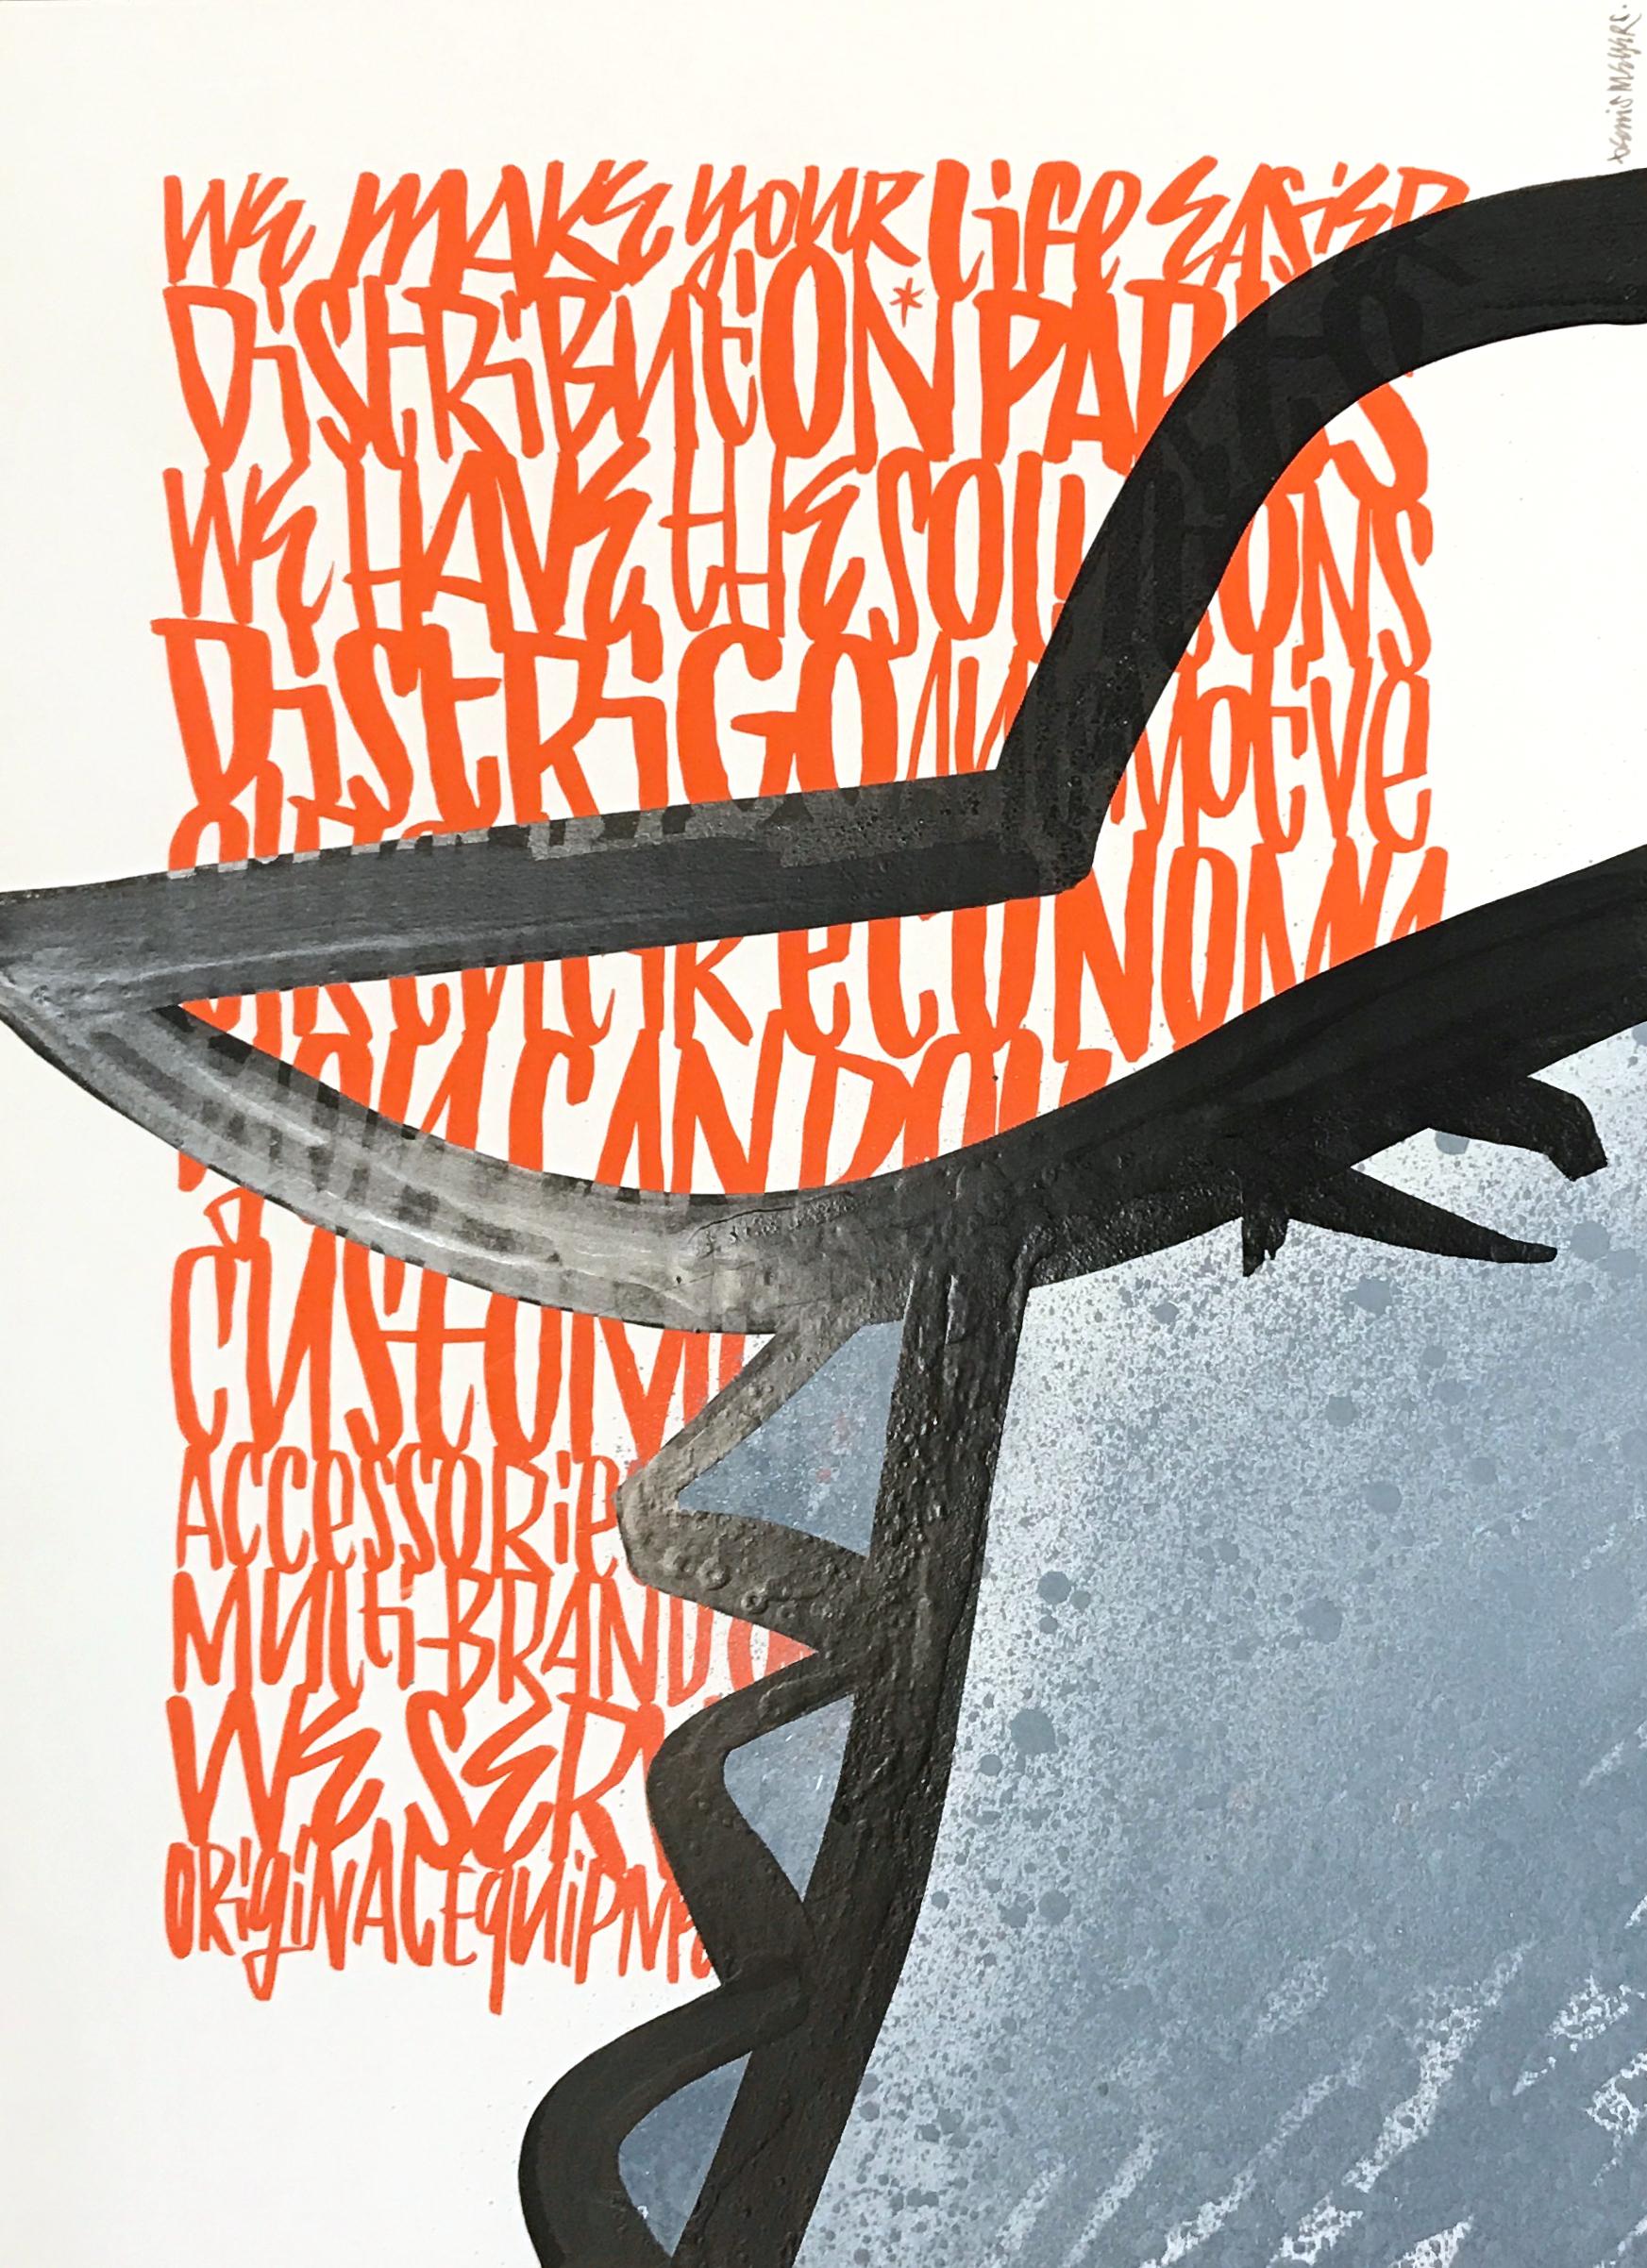 Ein einzigartiger Druck nach einer Originalzeichnung von Denis Meyers - Künstlerabzug aus einer Auflage. Der Druck auf Papier zeigt einige von Denis Meyers "Word Patterns" mit abstrakter Farbe, die eine seiner Figuren darstellt.
Wird flach geliefert